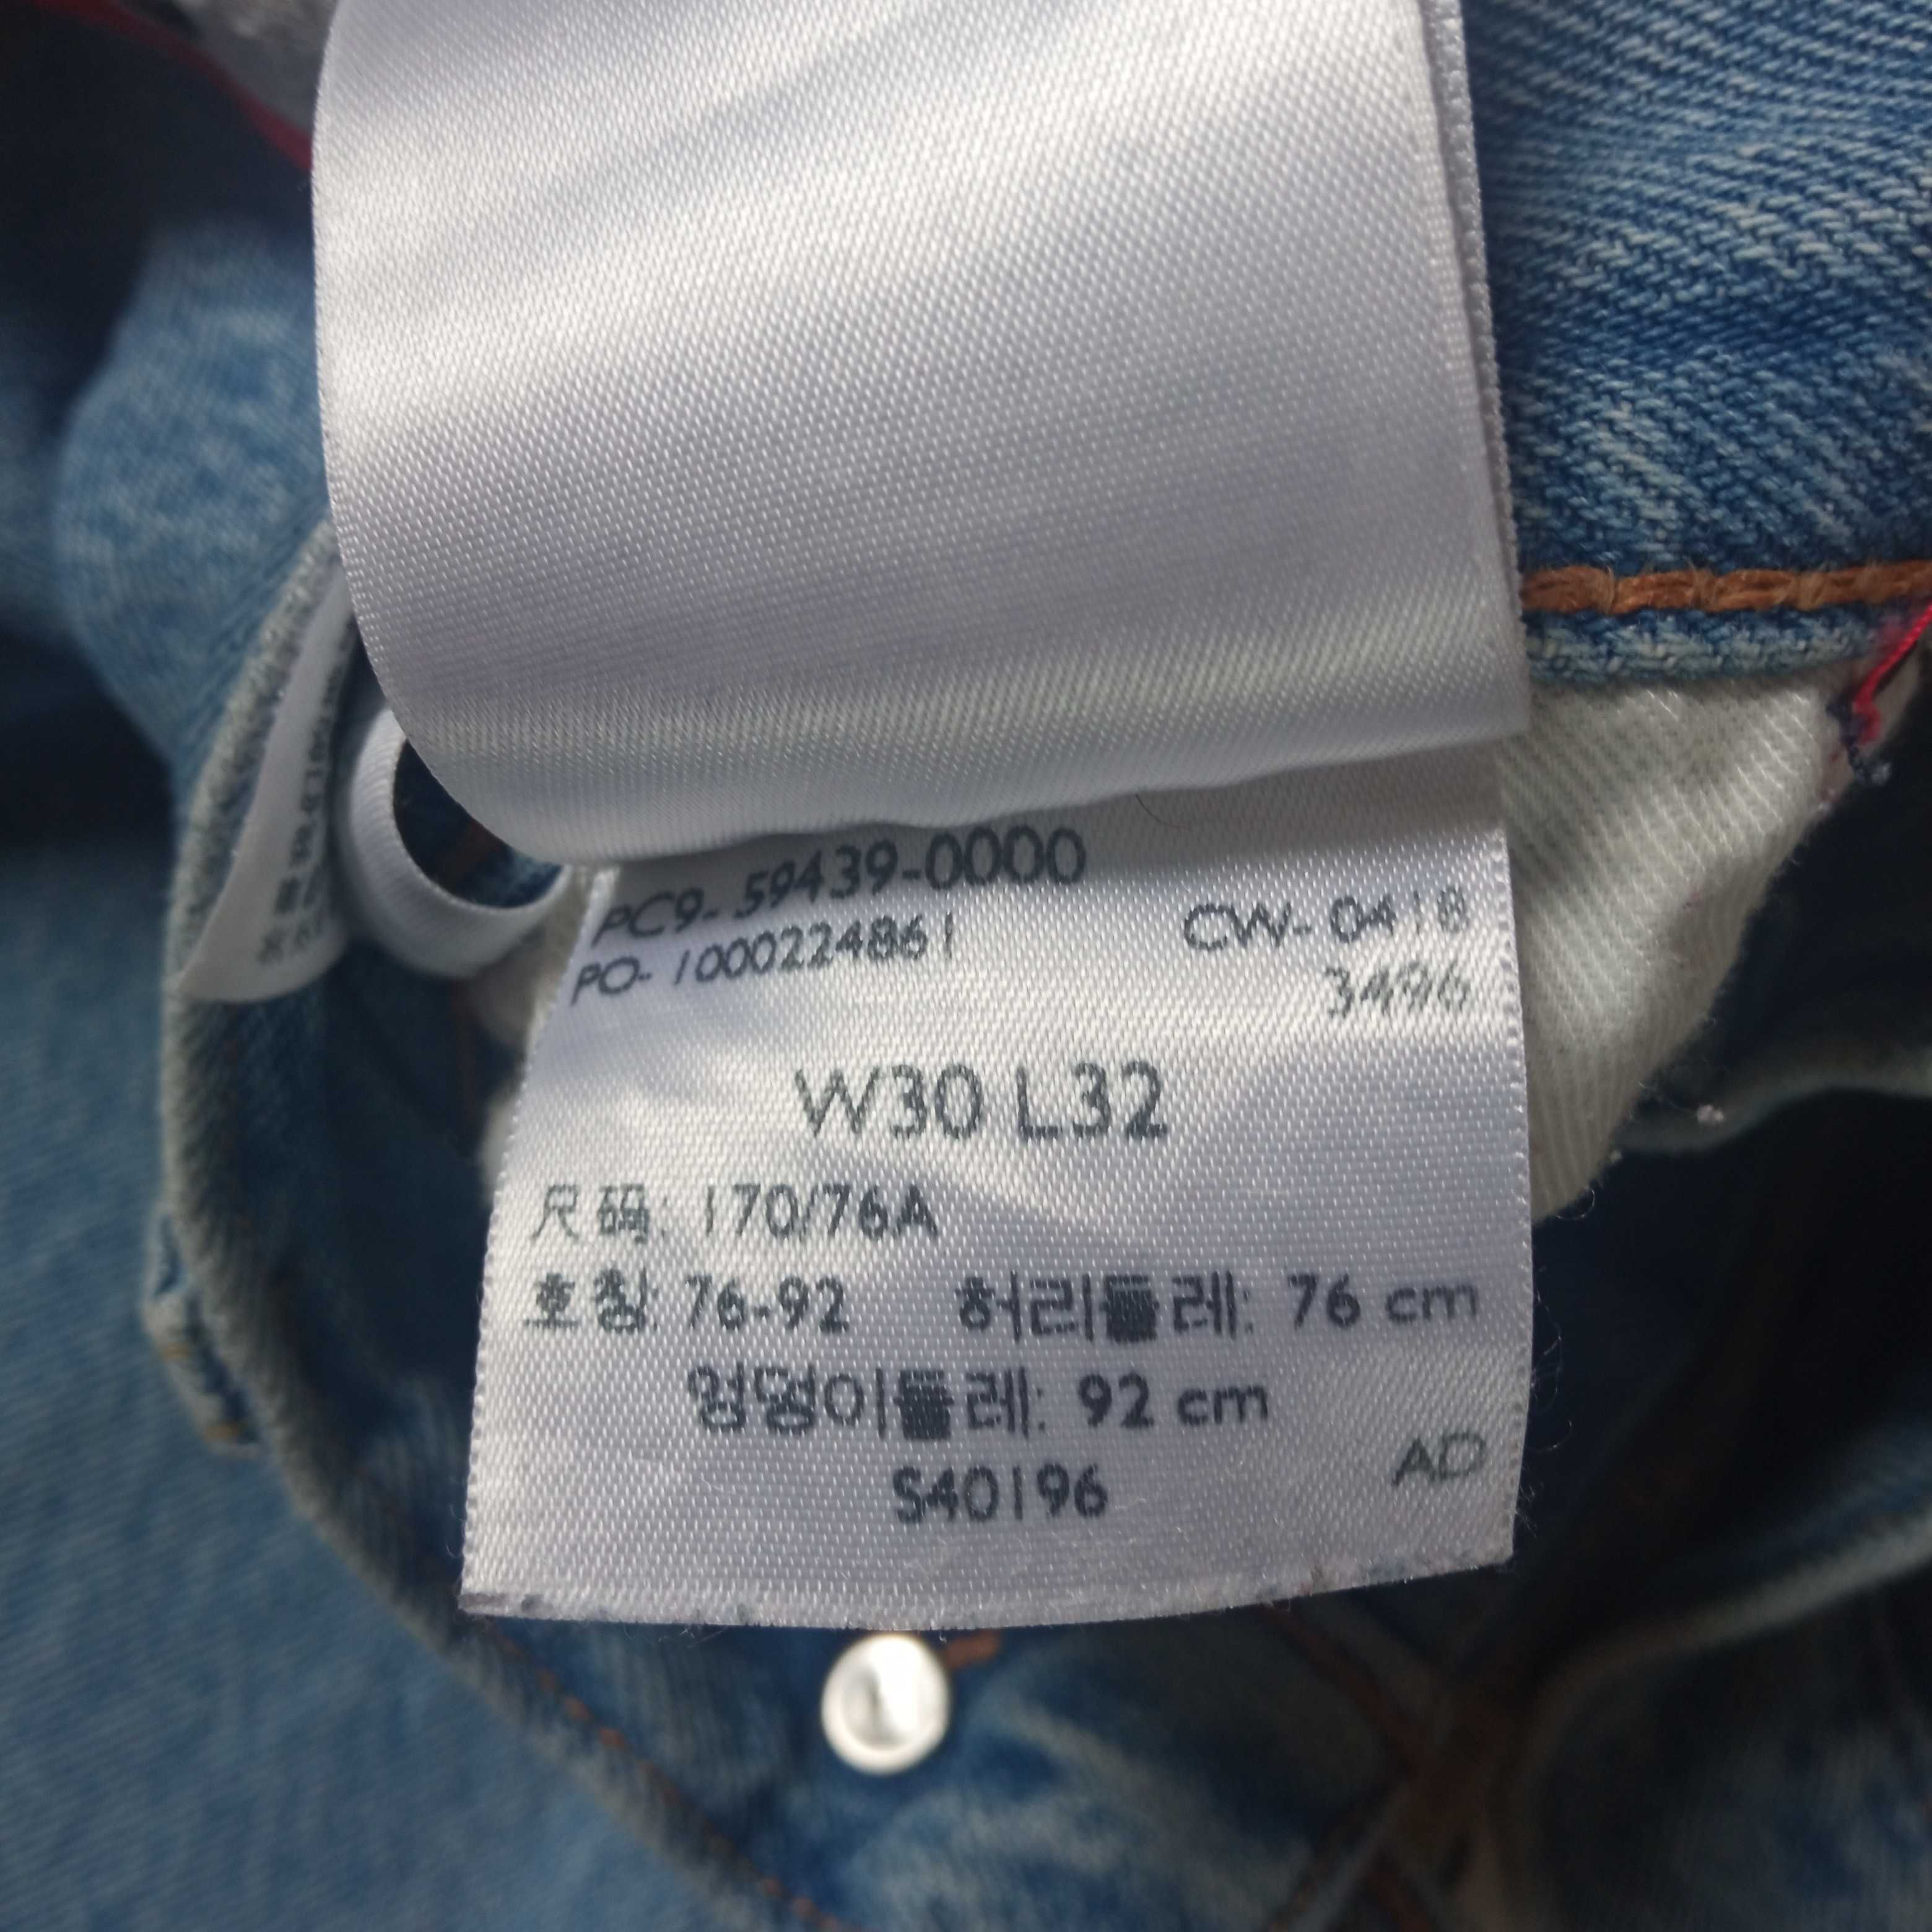 Jeans Levi's 501 Cropped Lampasy Damskie Spodnie Dżinsowe W30 L32